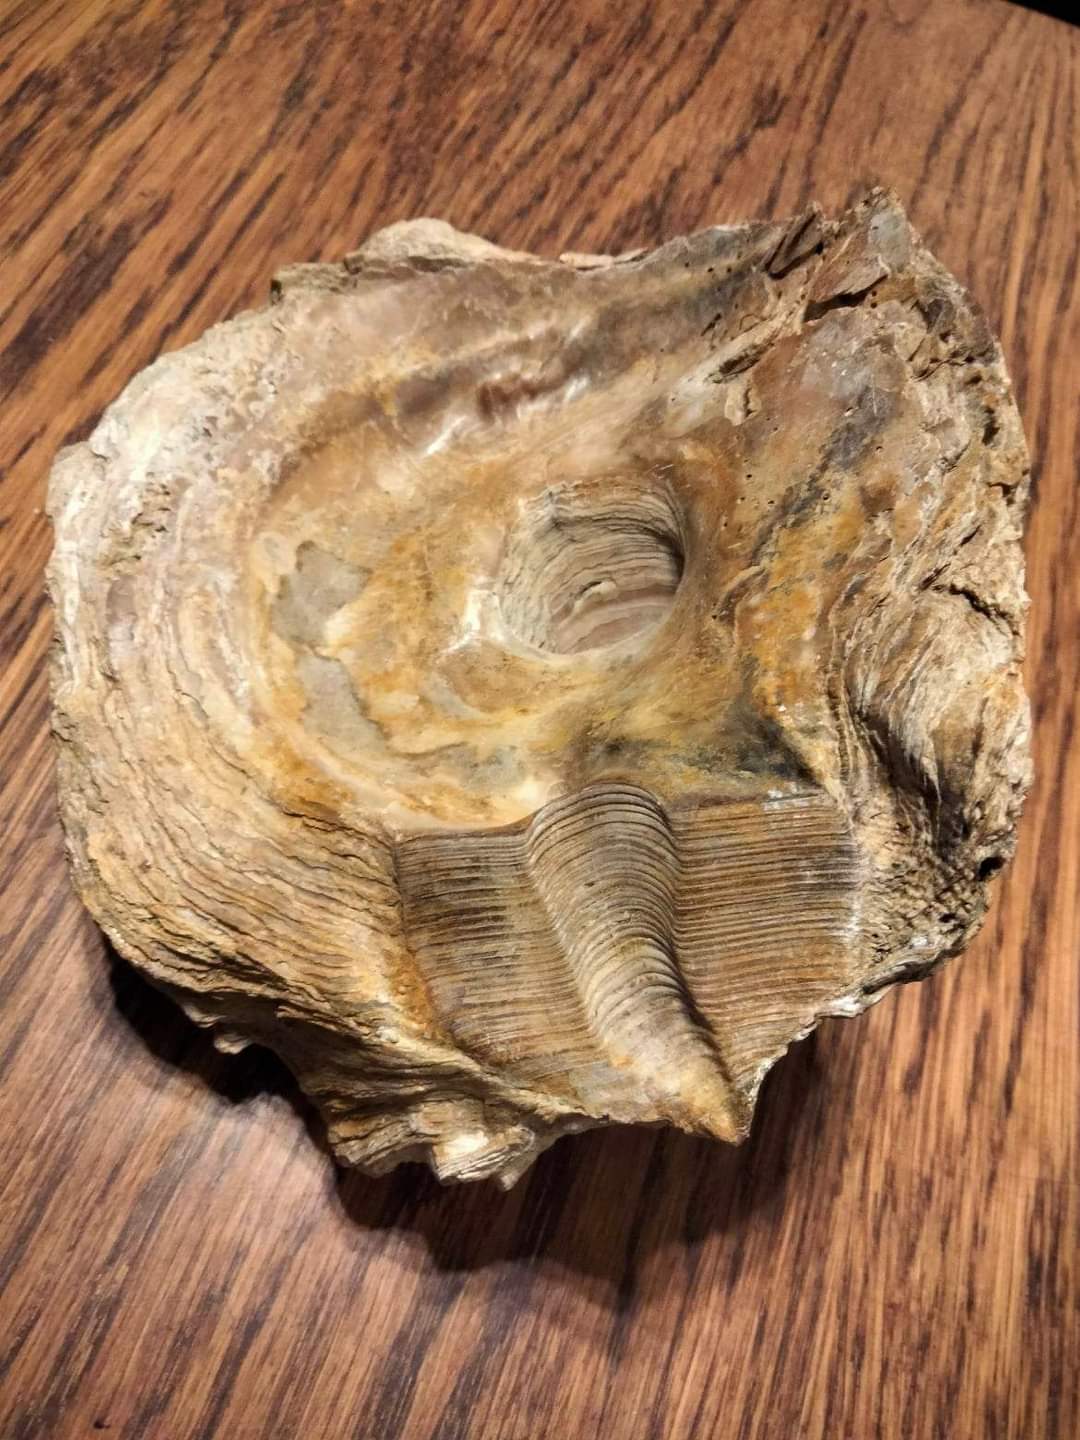 Новости Днепра про В исторический музей Днепра передали древний моллюск, которому 50 миллионов лет